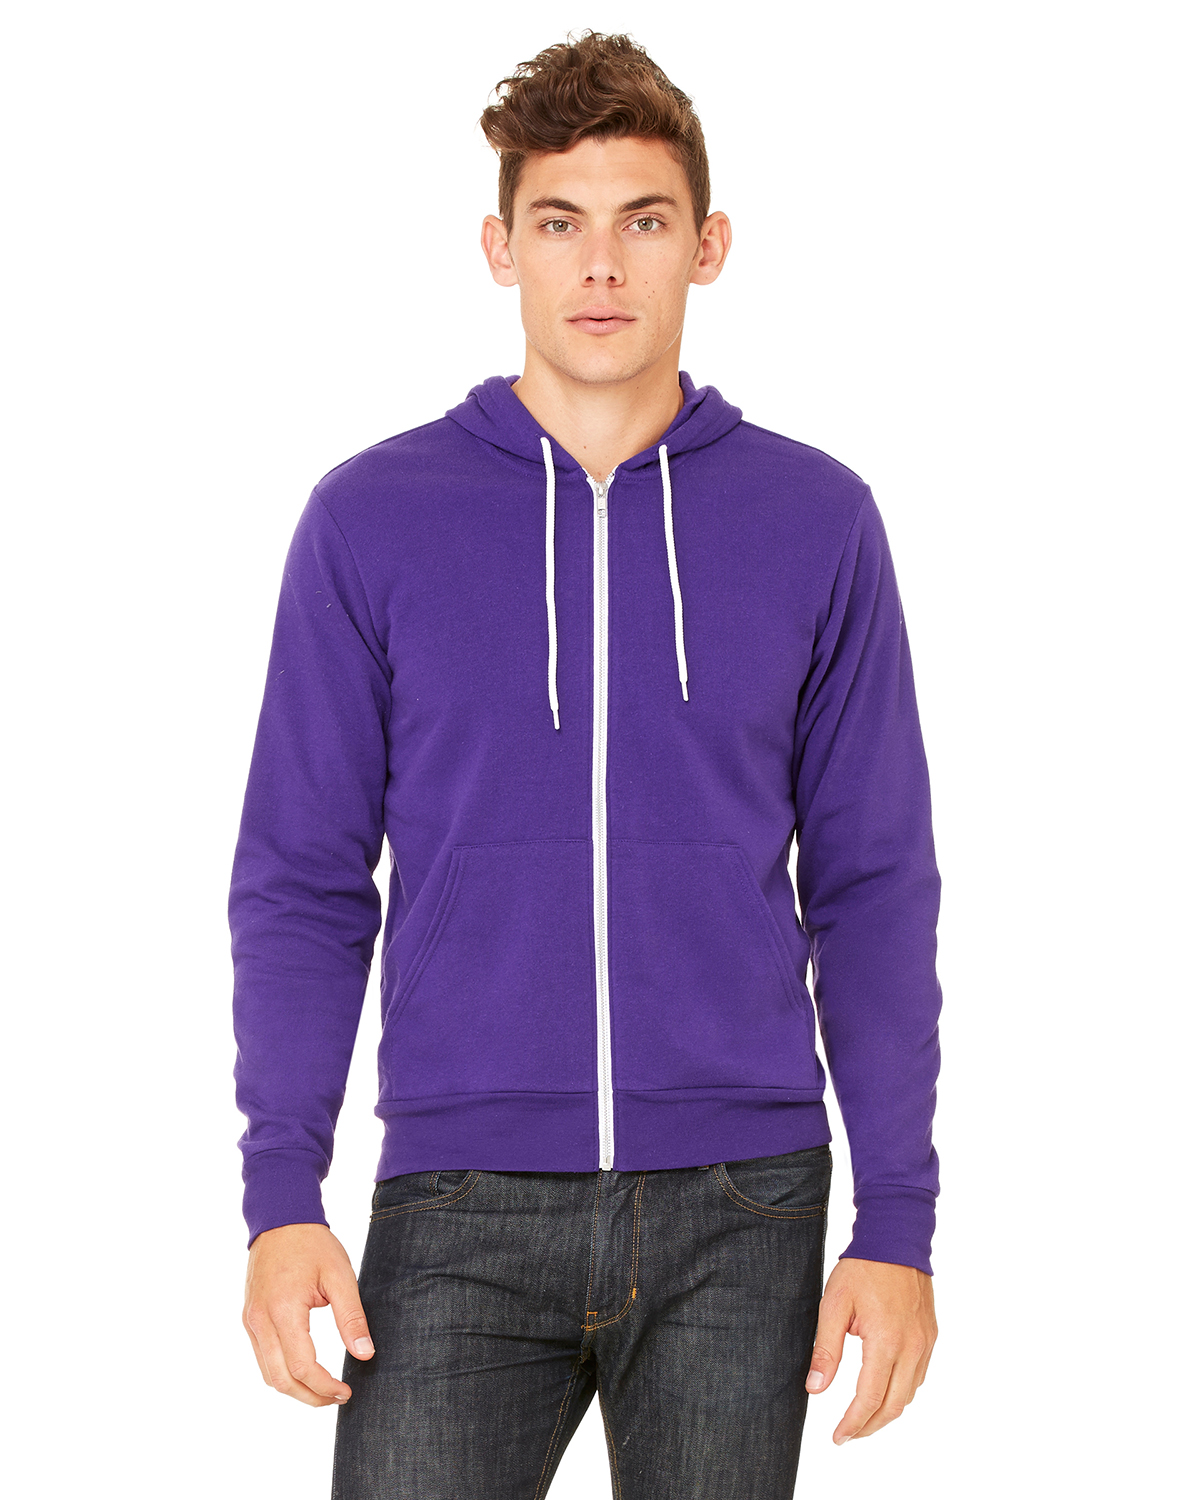 Rabatt 87 % DAMEN Pullovers & Sweatshirts Sweatshirt Fleece Quechua sweatshirt Violett L 